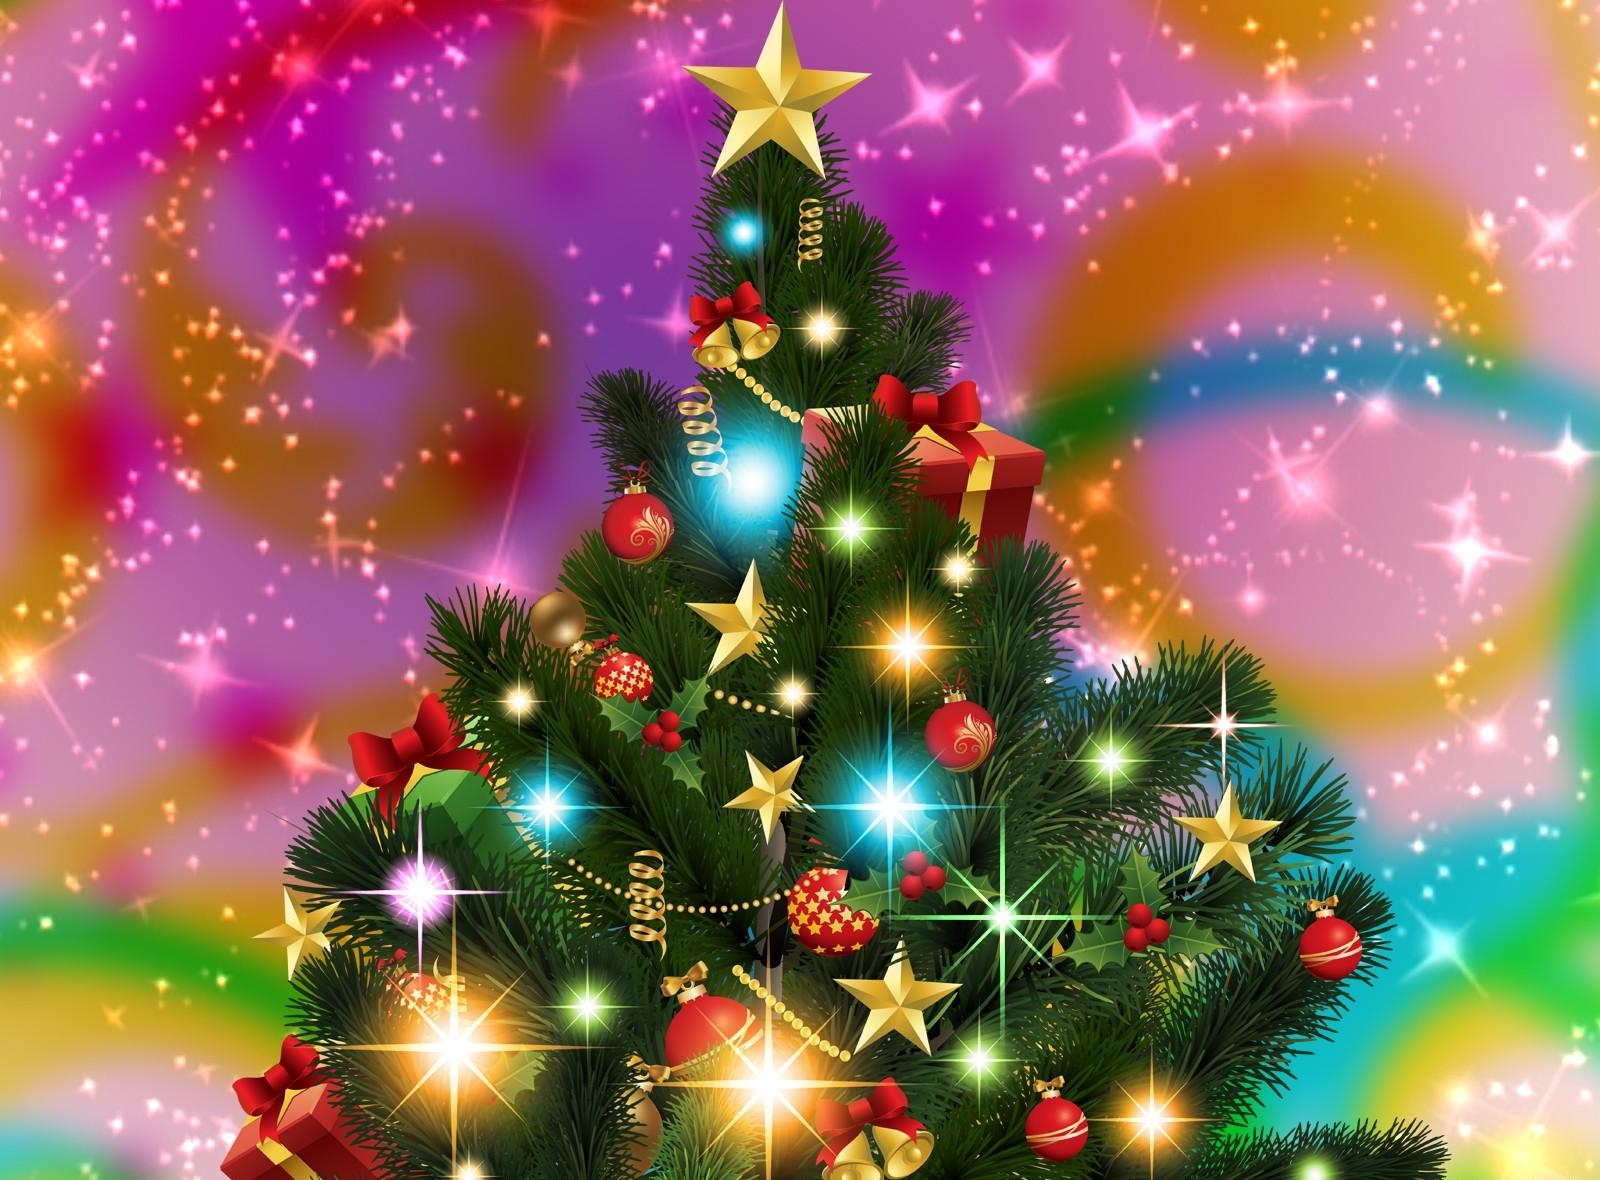 shining, christmas tree, holidays, stars, holiday, garland, garlands Full HD